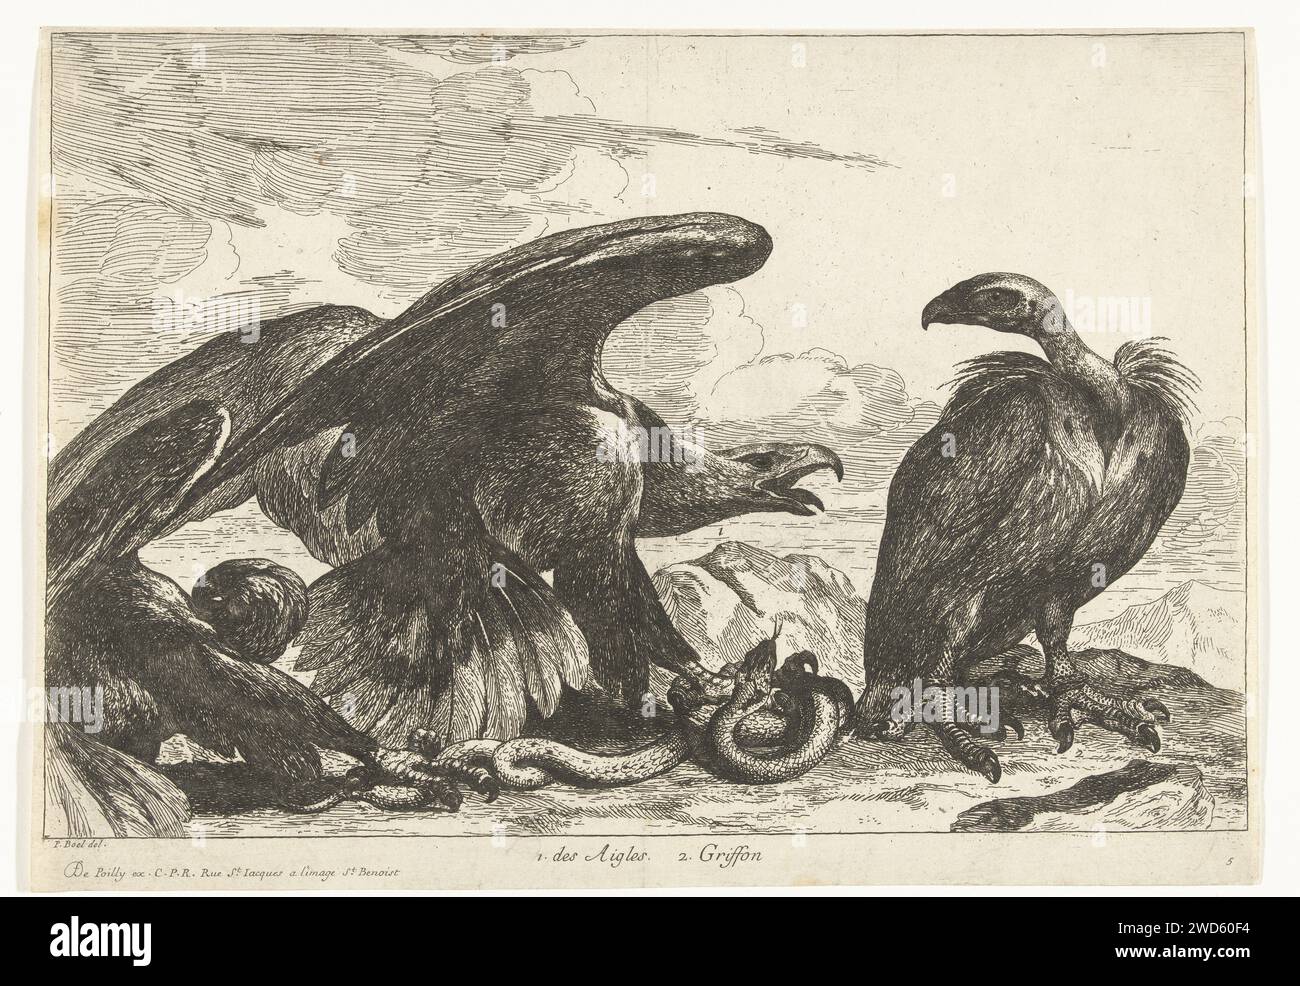 Gier et un aigle avec tuyau, Peeter Boel (attribué à), d'après Peeter Boel, 1670 - 1674 estampe dans un paysage rocheux, un aigle et un vautour d'un serpent se battent. Gravure sur papier de Paris oiseaux prédateurs : aigle. oiseaux prédateurs : vautour Banque D'Images